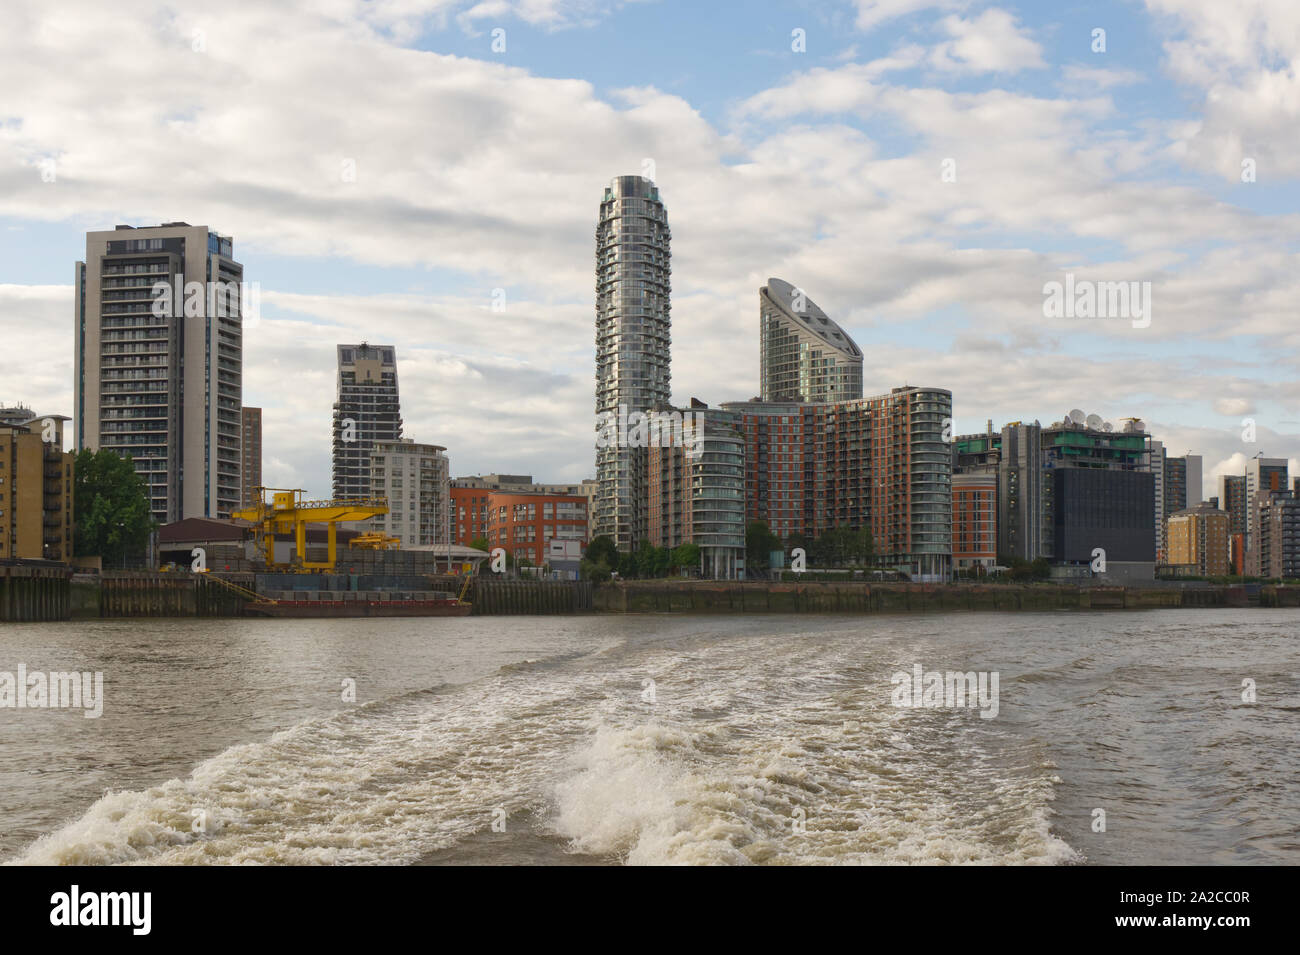 Londres, Angleterre - 1 juillet 2019 : Docklands dans l'East End de Londres, les bâtiments modernes vu de Tamise Banque D'Images